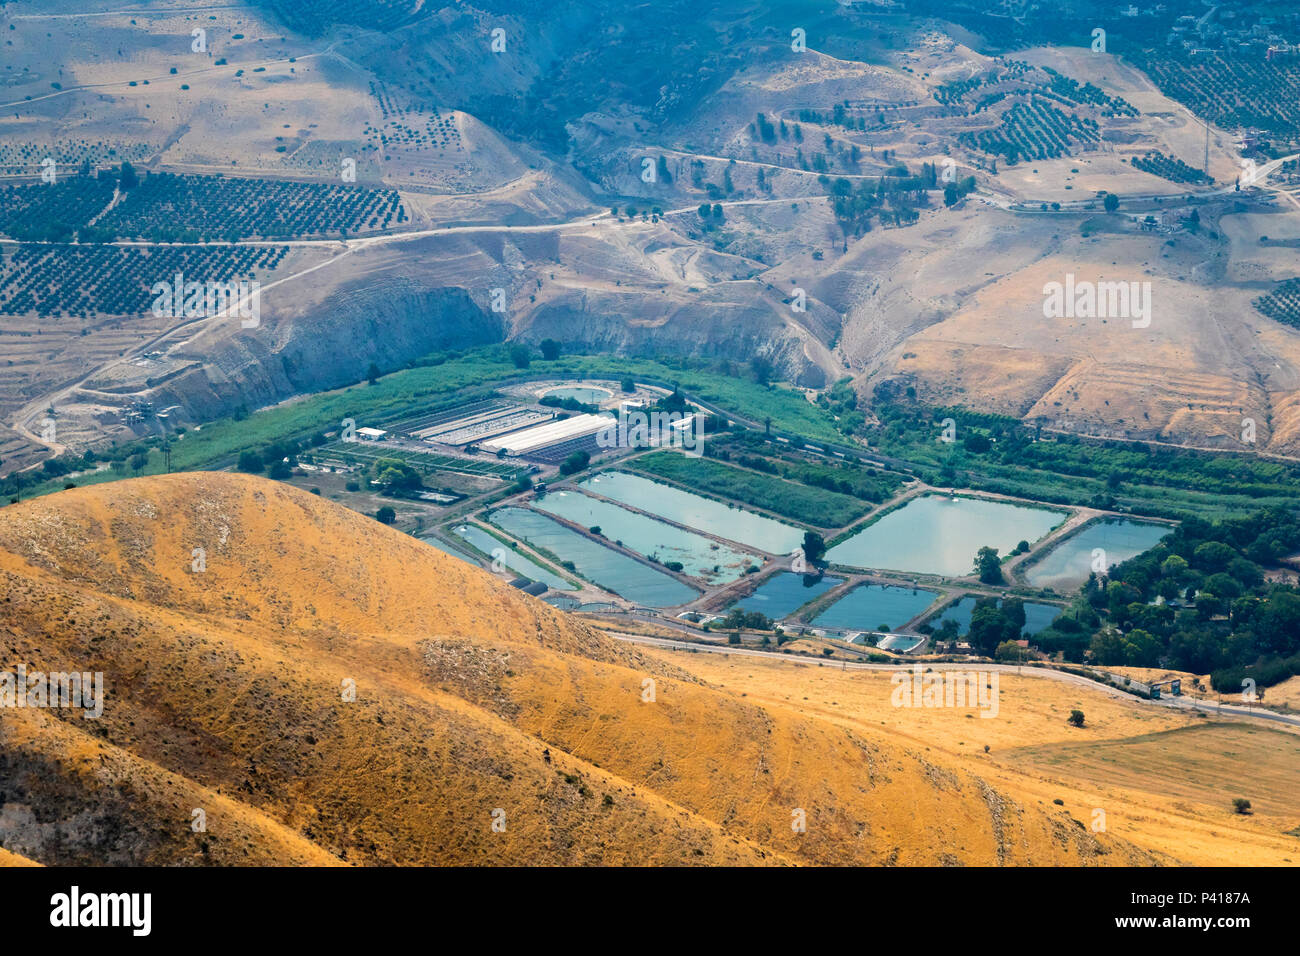 El paisaje agrícola con estanques de cría de peces en el norte de Israel, vista aérea Foto de stock